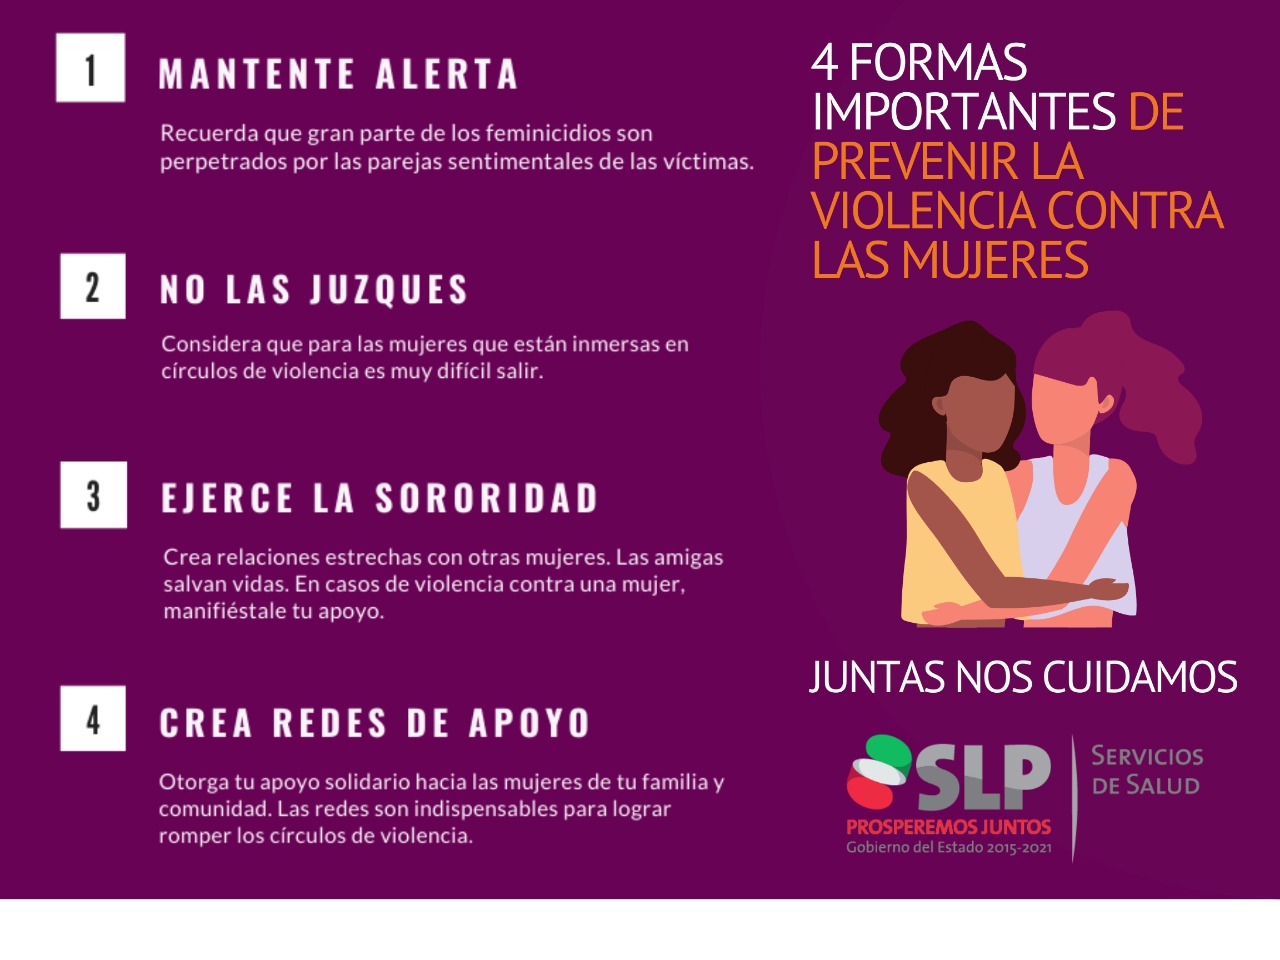 Redes De Apoyo Fundamental Para AtenciÓn De Mujeres En SituaciÓn De Violencia Servicios De Salud 3145